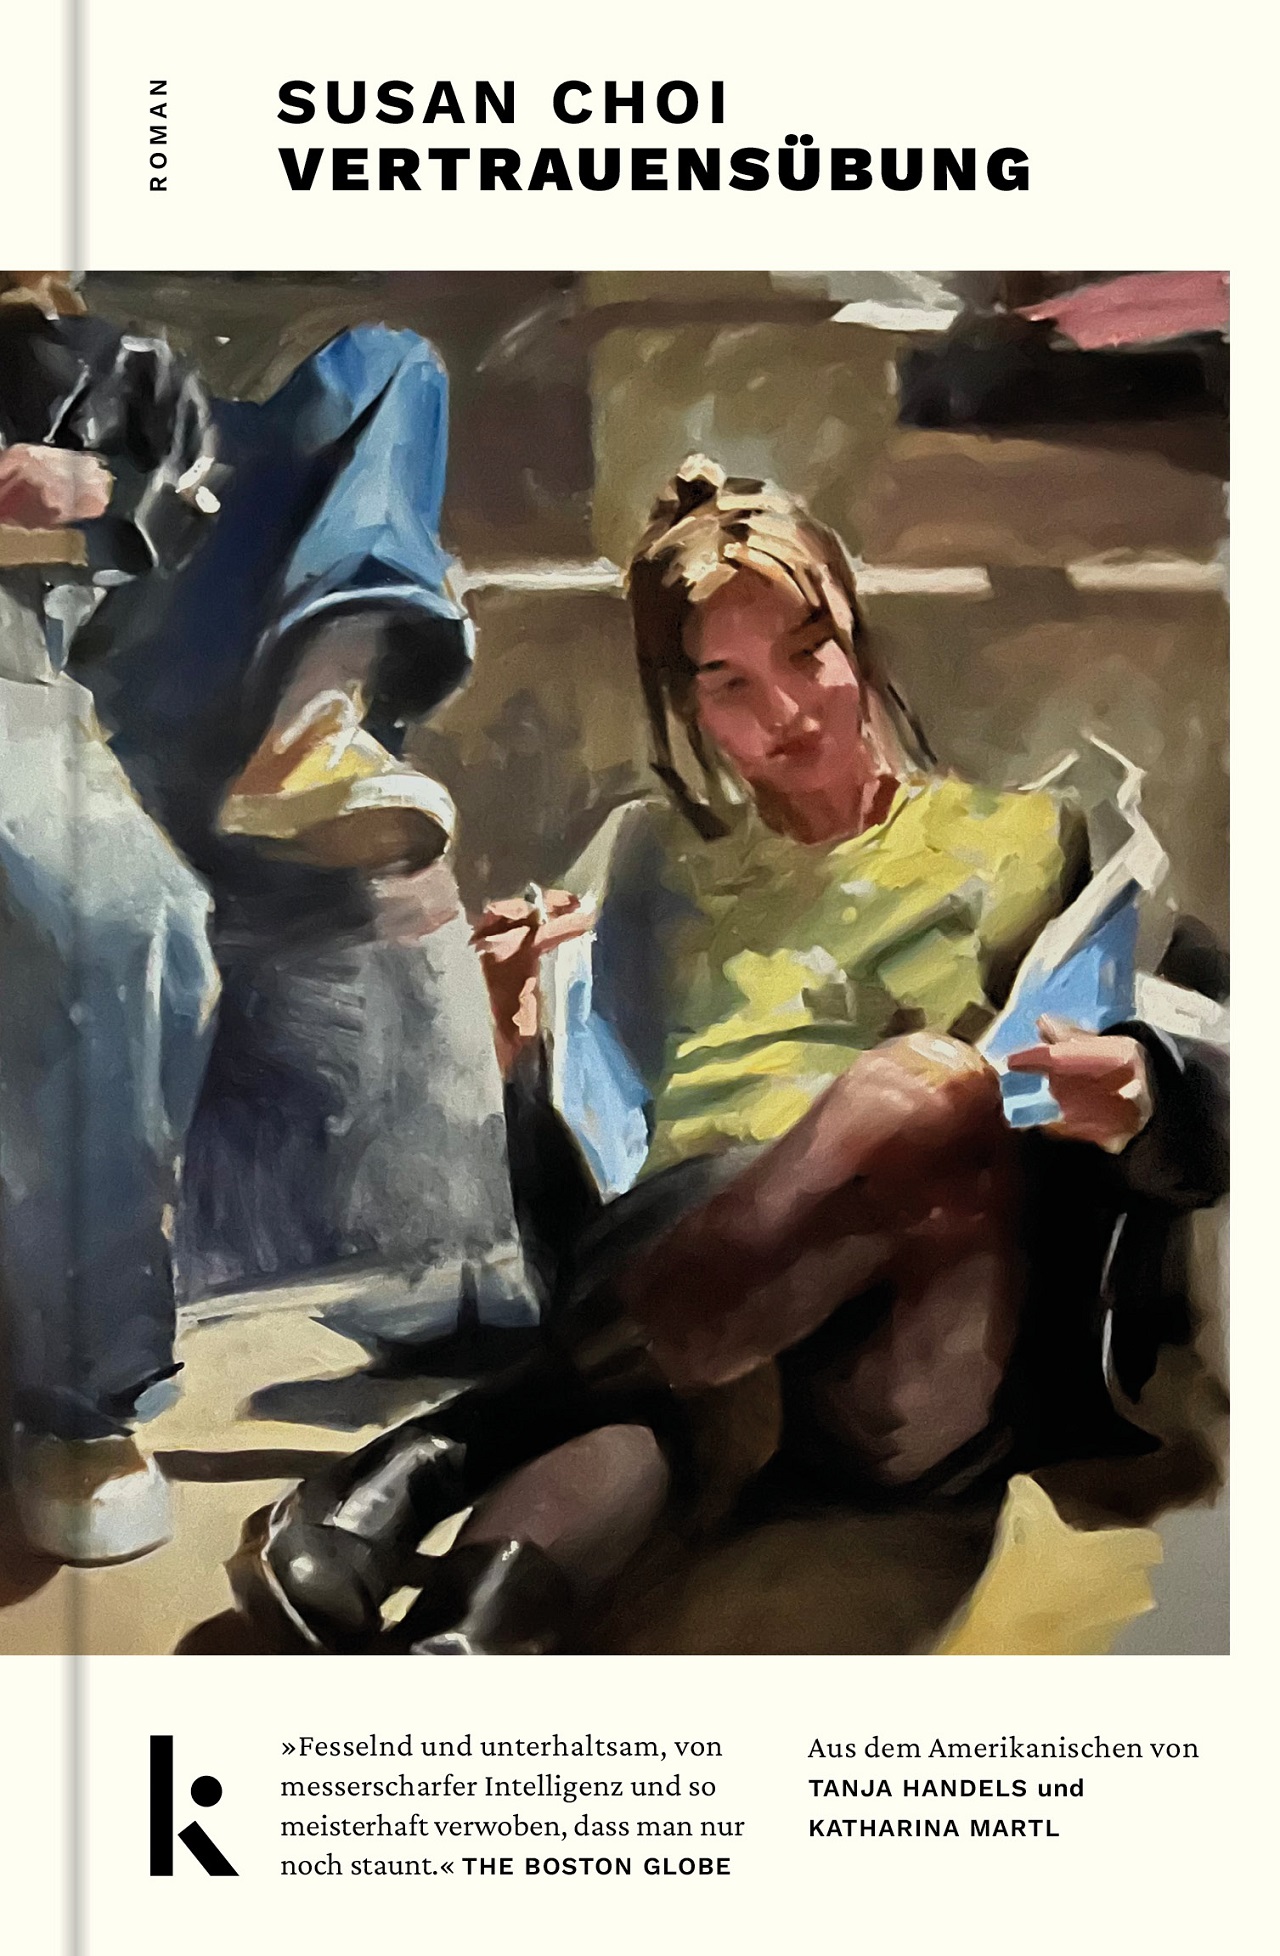 Das Gemälde "Ground Boots" von Mark Tennant am Cover von Susan Chois Roman "Vertrauensübung": Eine junge Frau in Stiefeln sitzt lässig auf einem Boden im Flur.